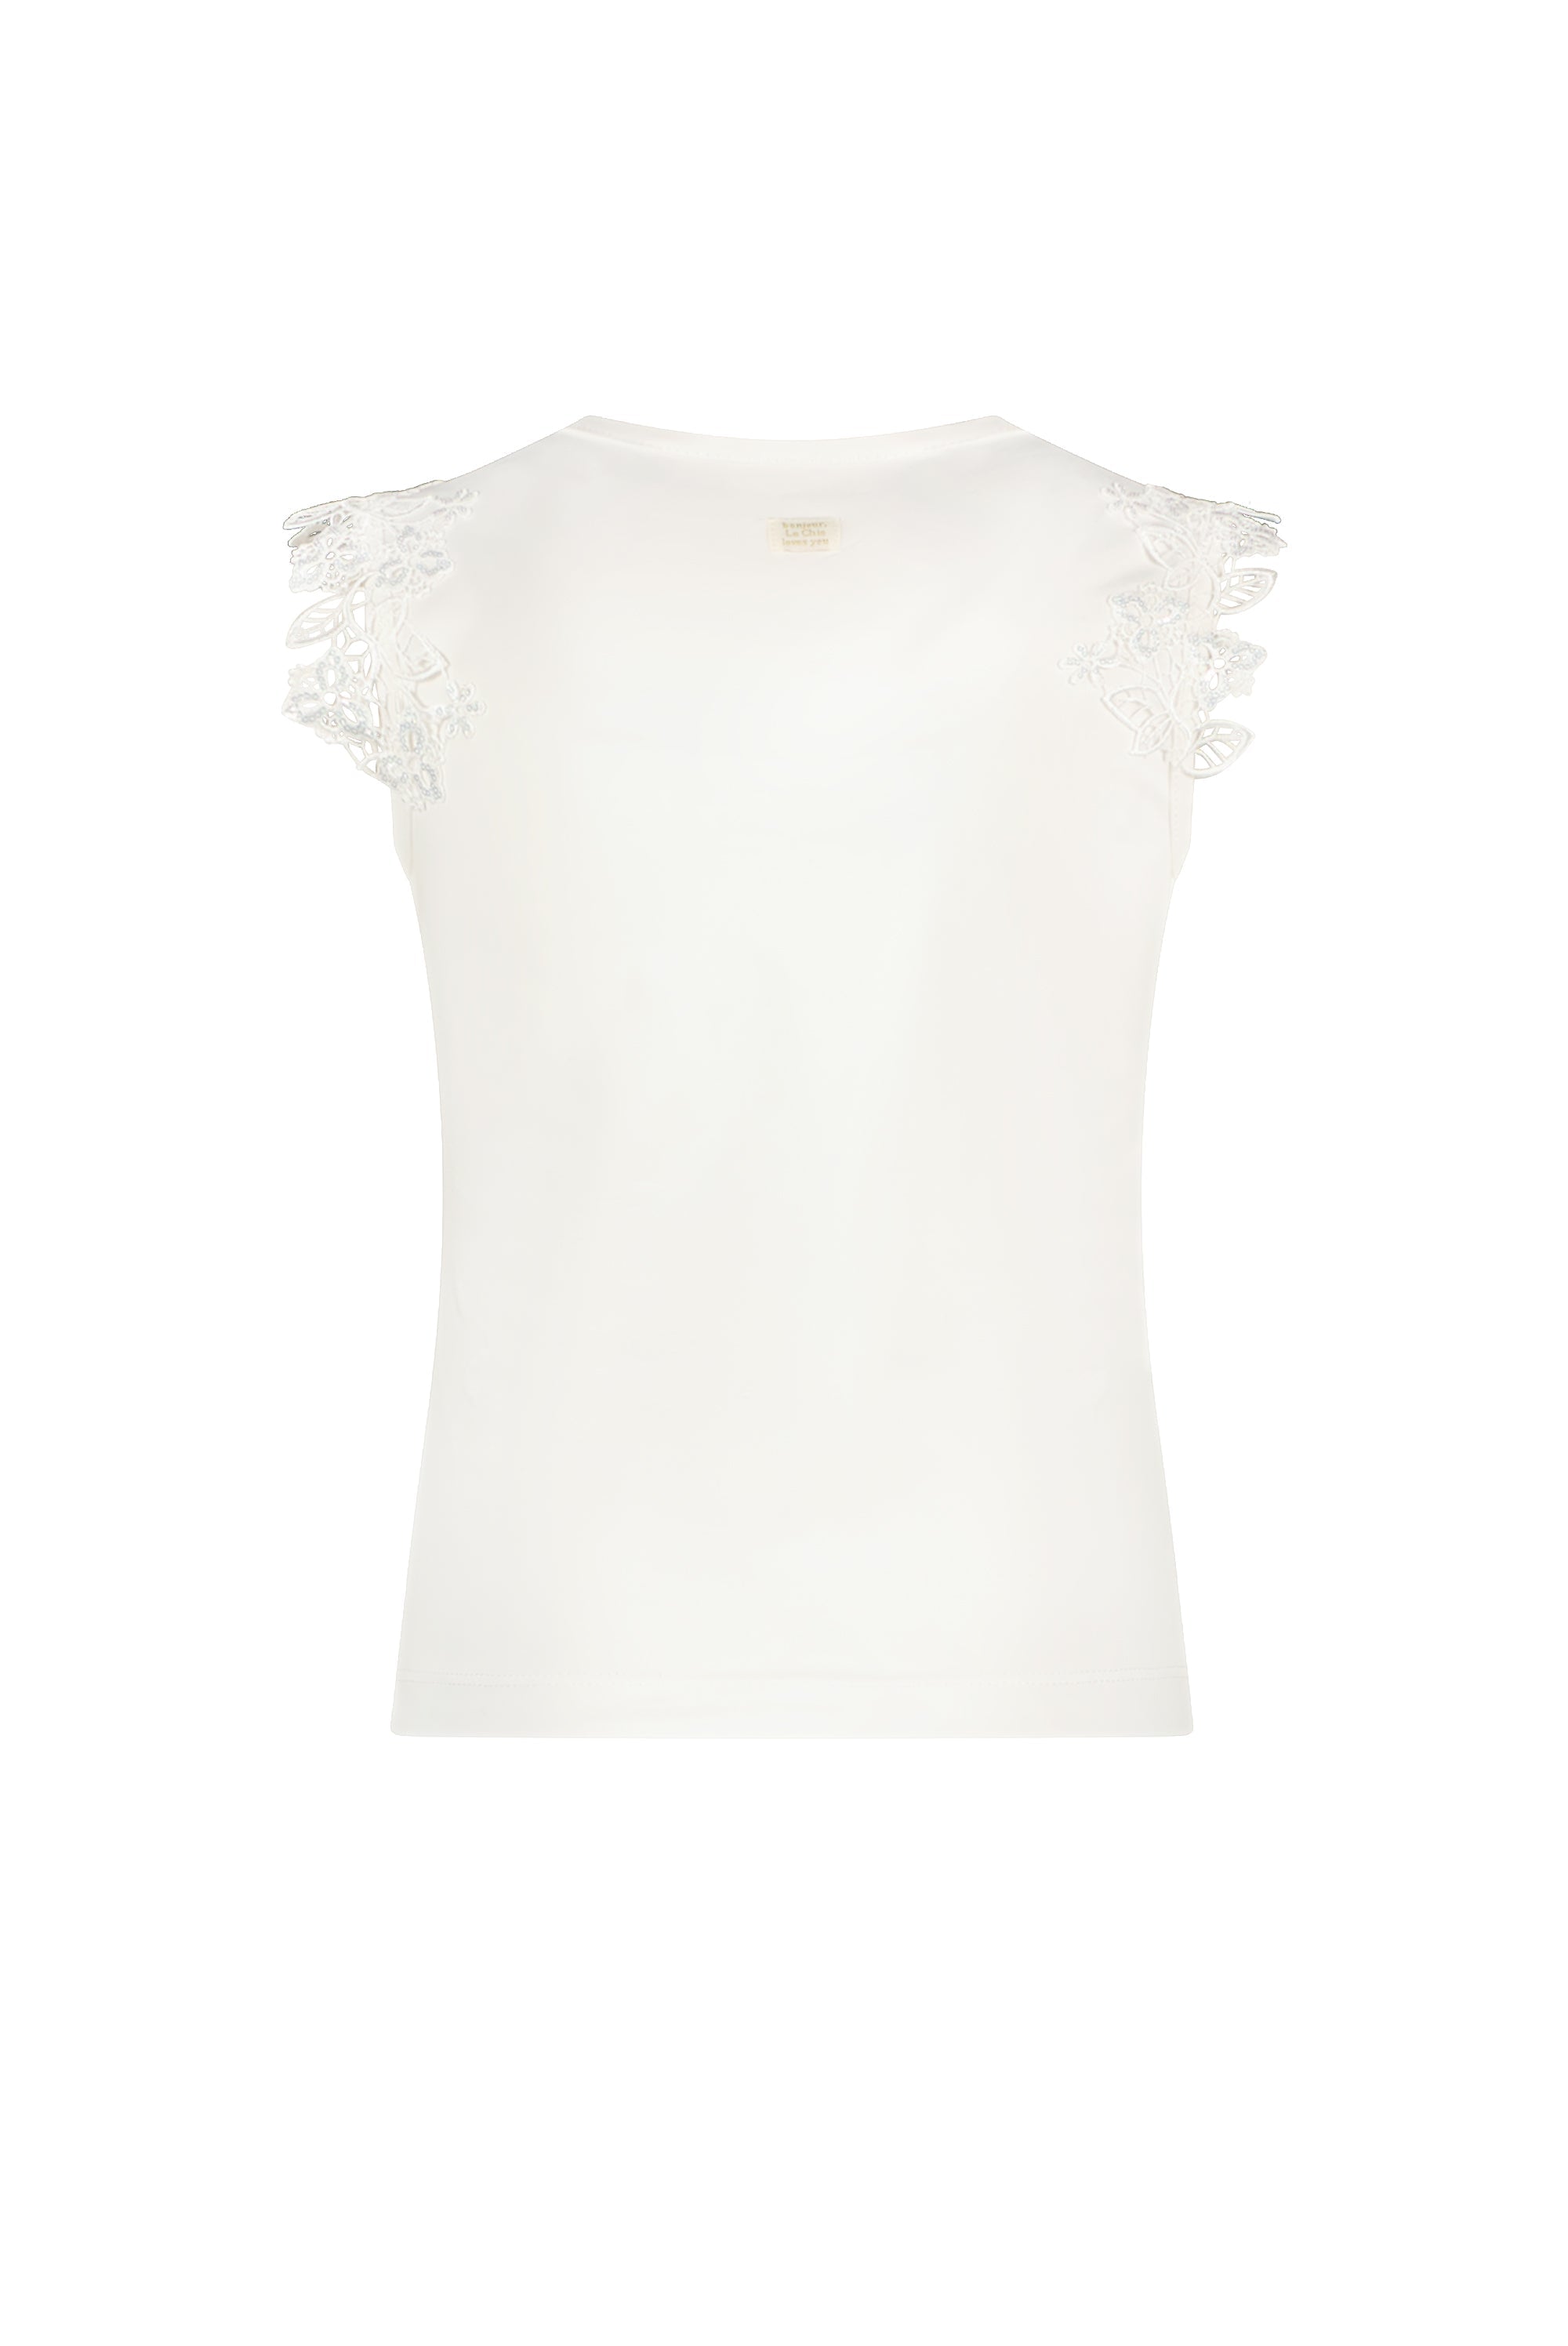 NOOSHY bloemen T-shirt Off white